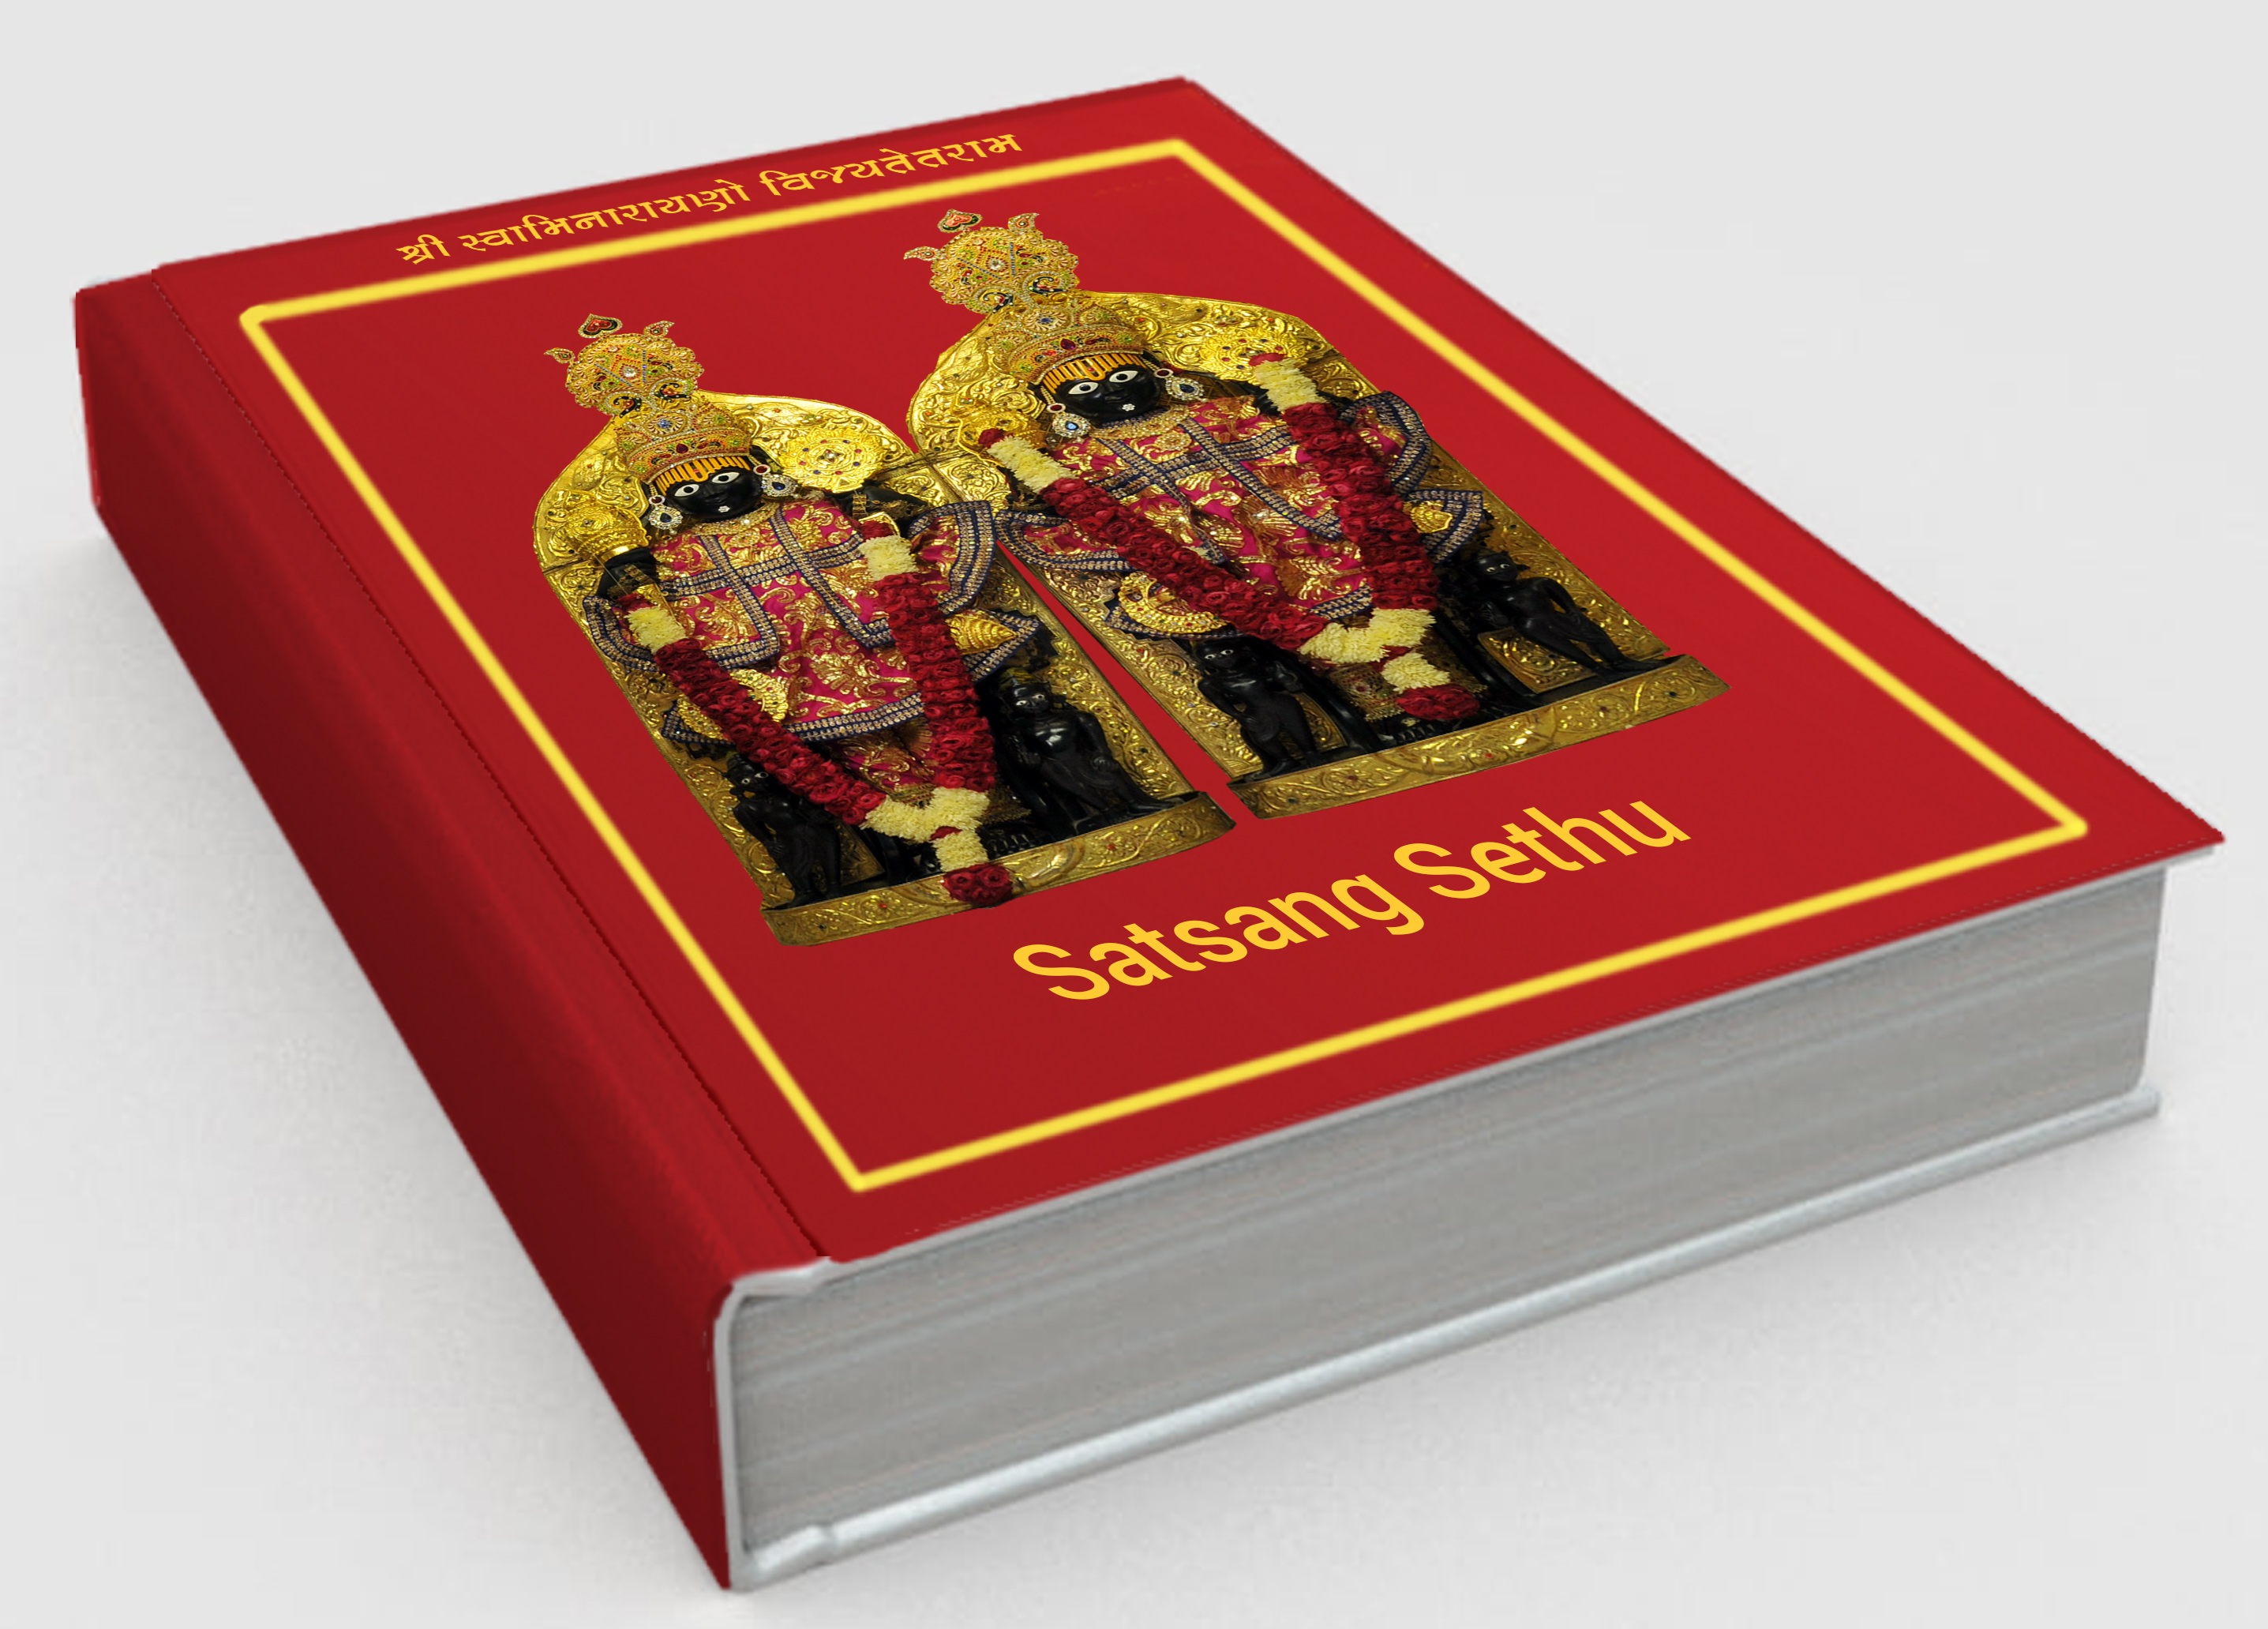 Cover of Satsang Sethu